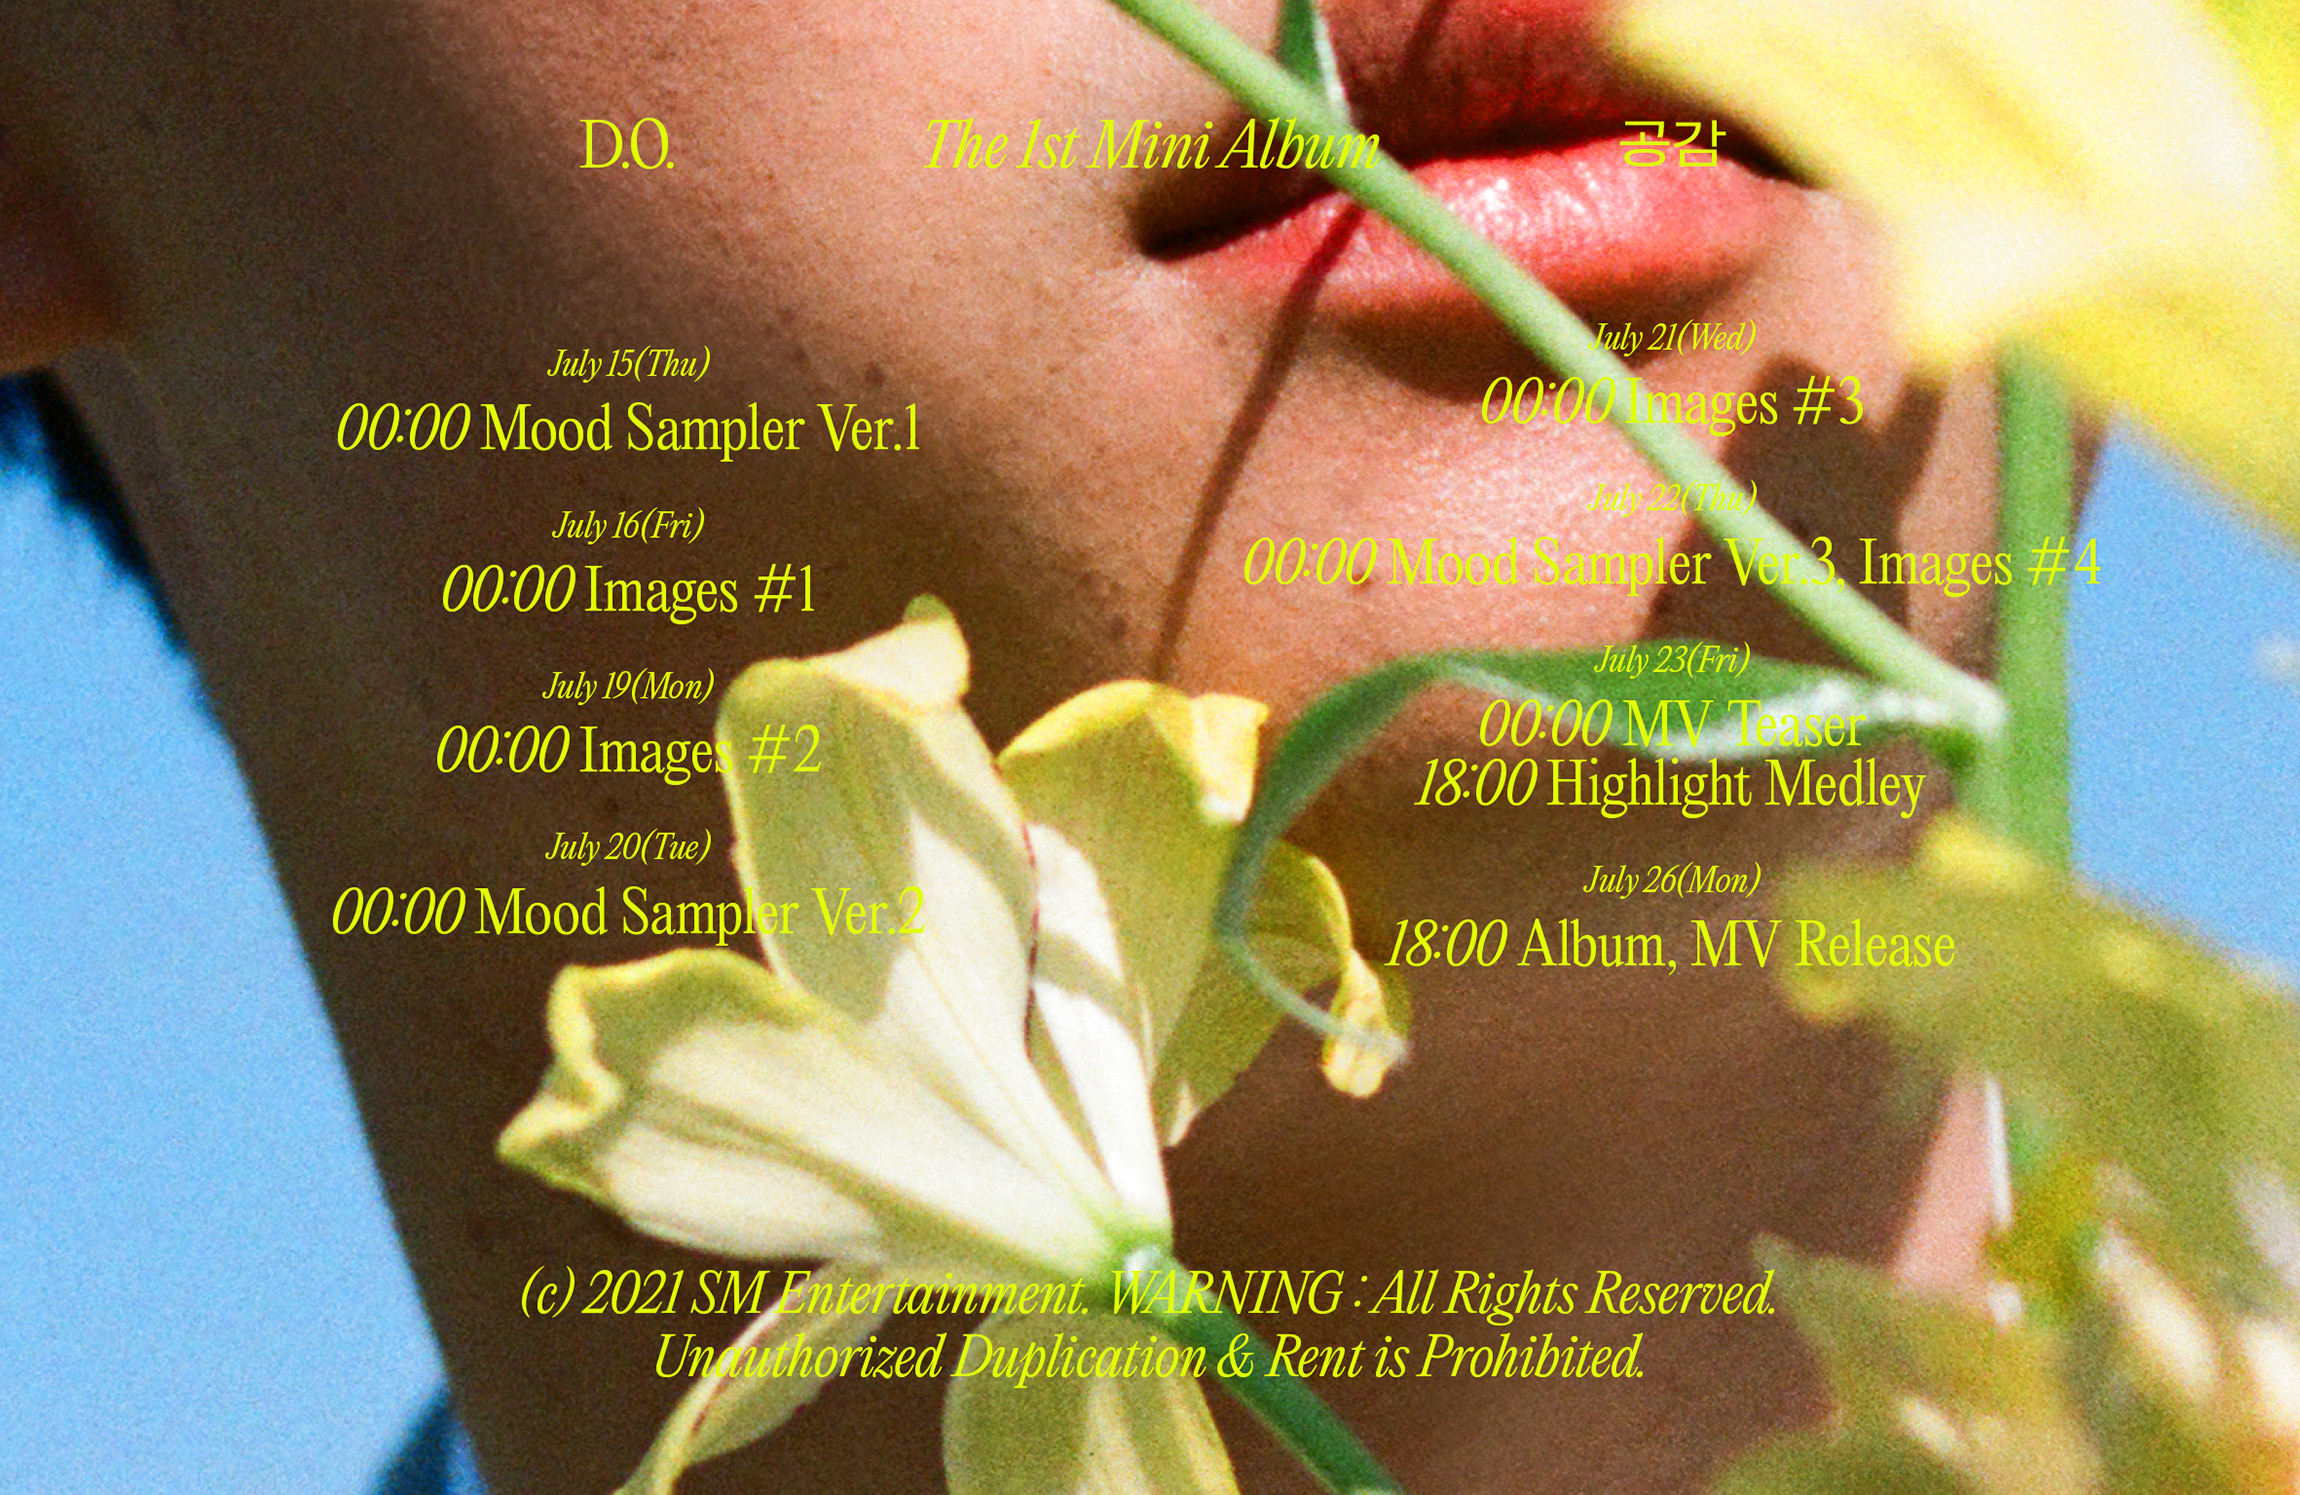 Century Tuna - EXO DO album release schedule